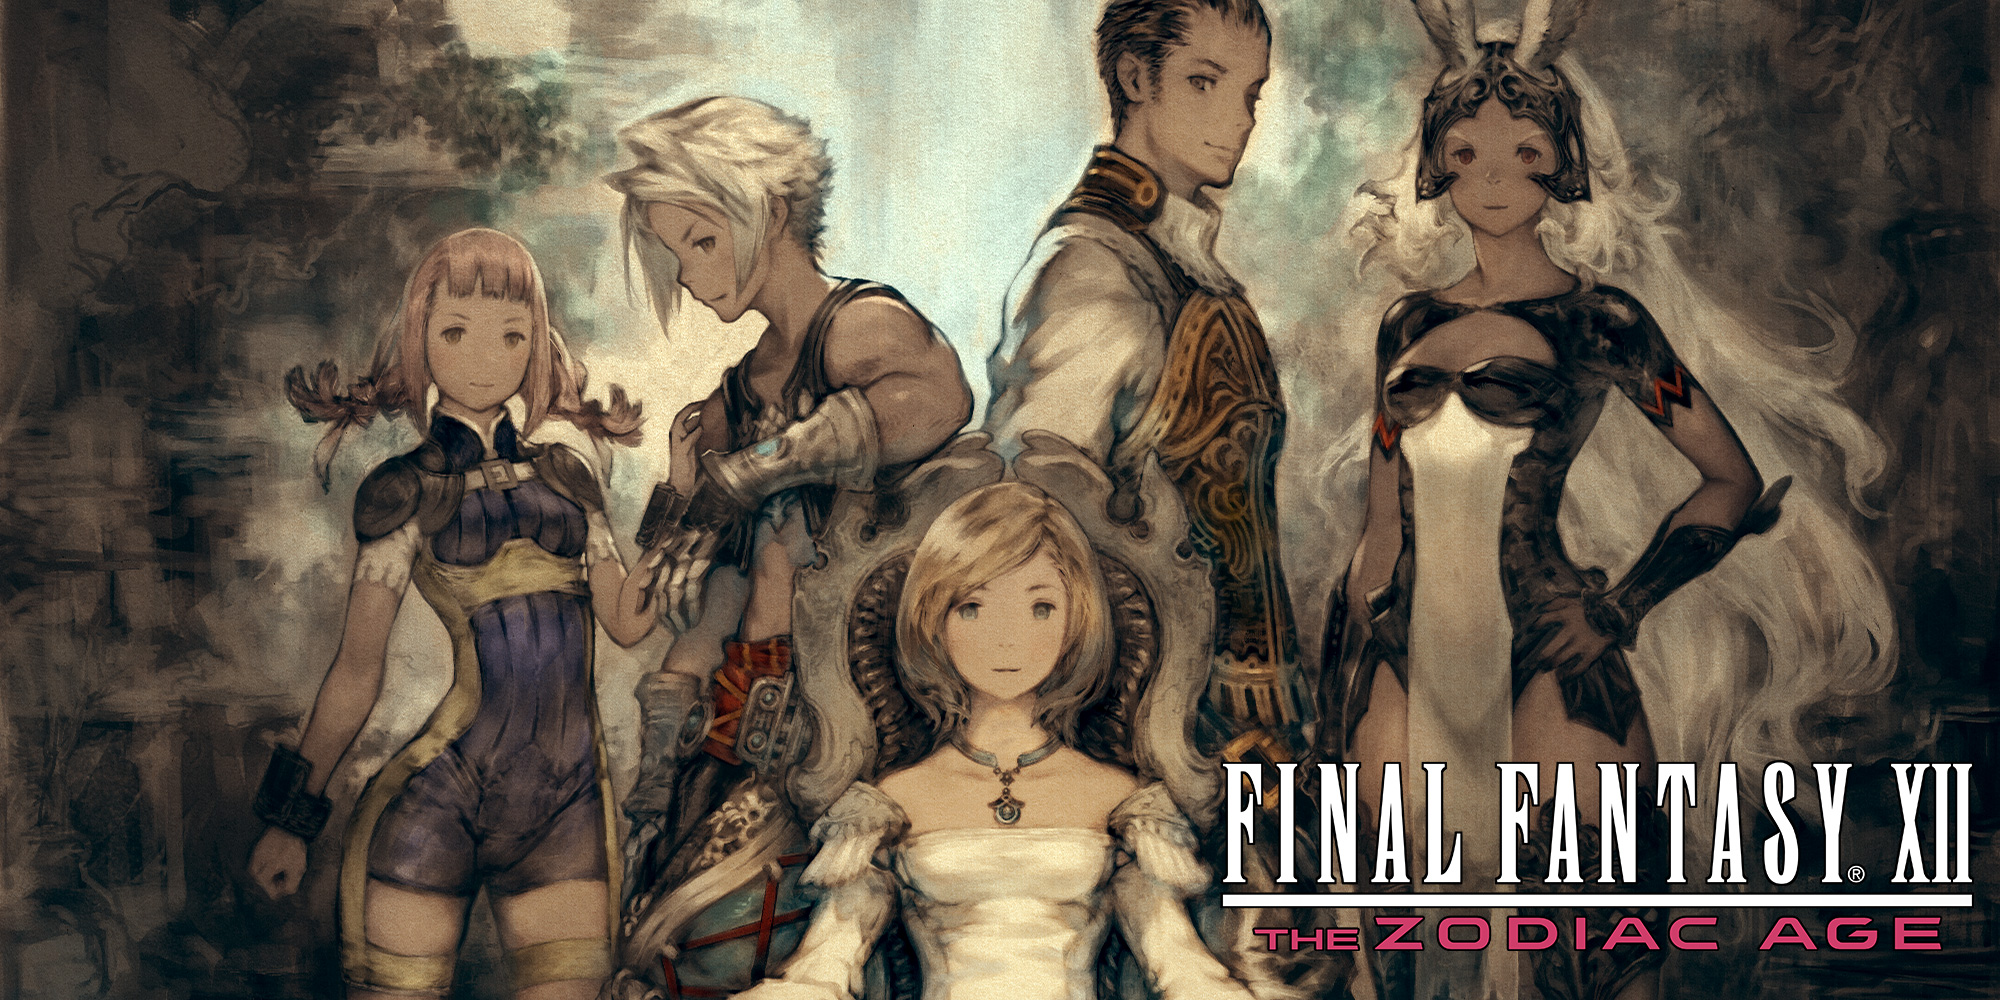 Final Fantasy XII: The Zodiac Age ganha atualização de Reset de Jobs e Gambits adicionais